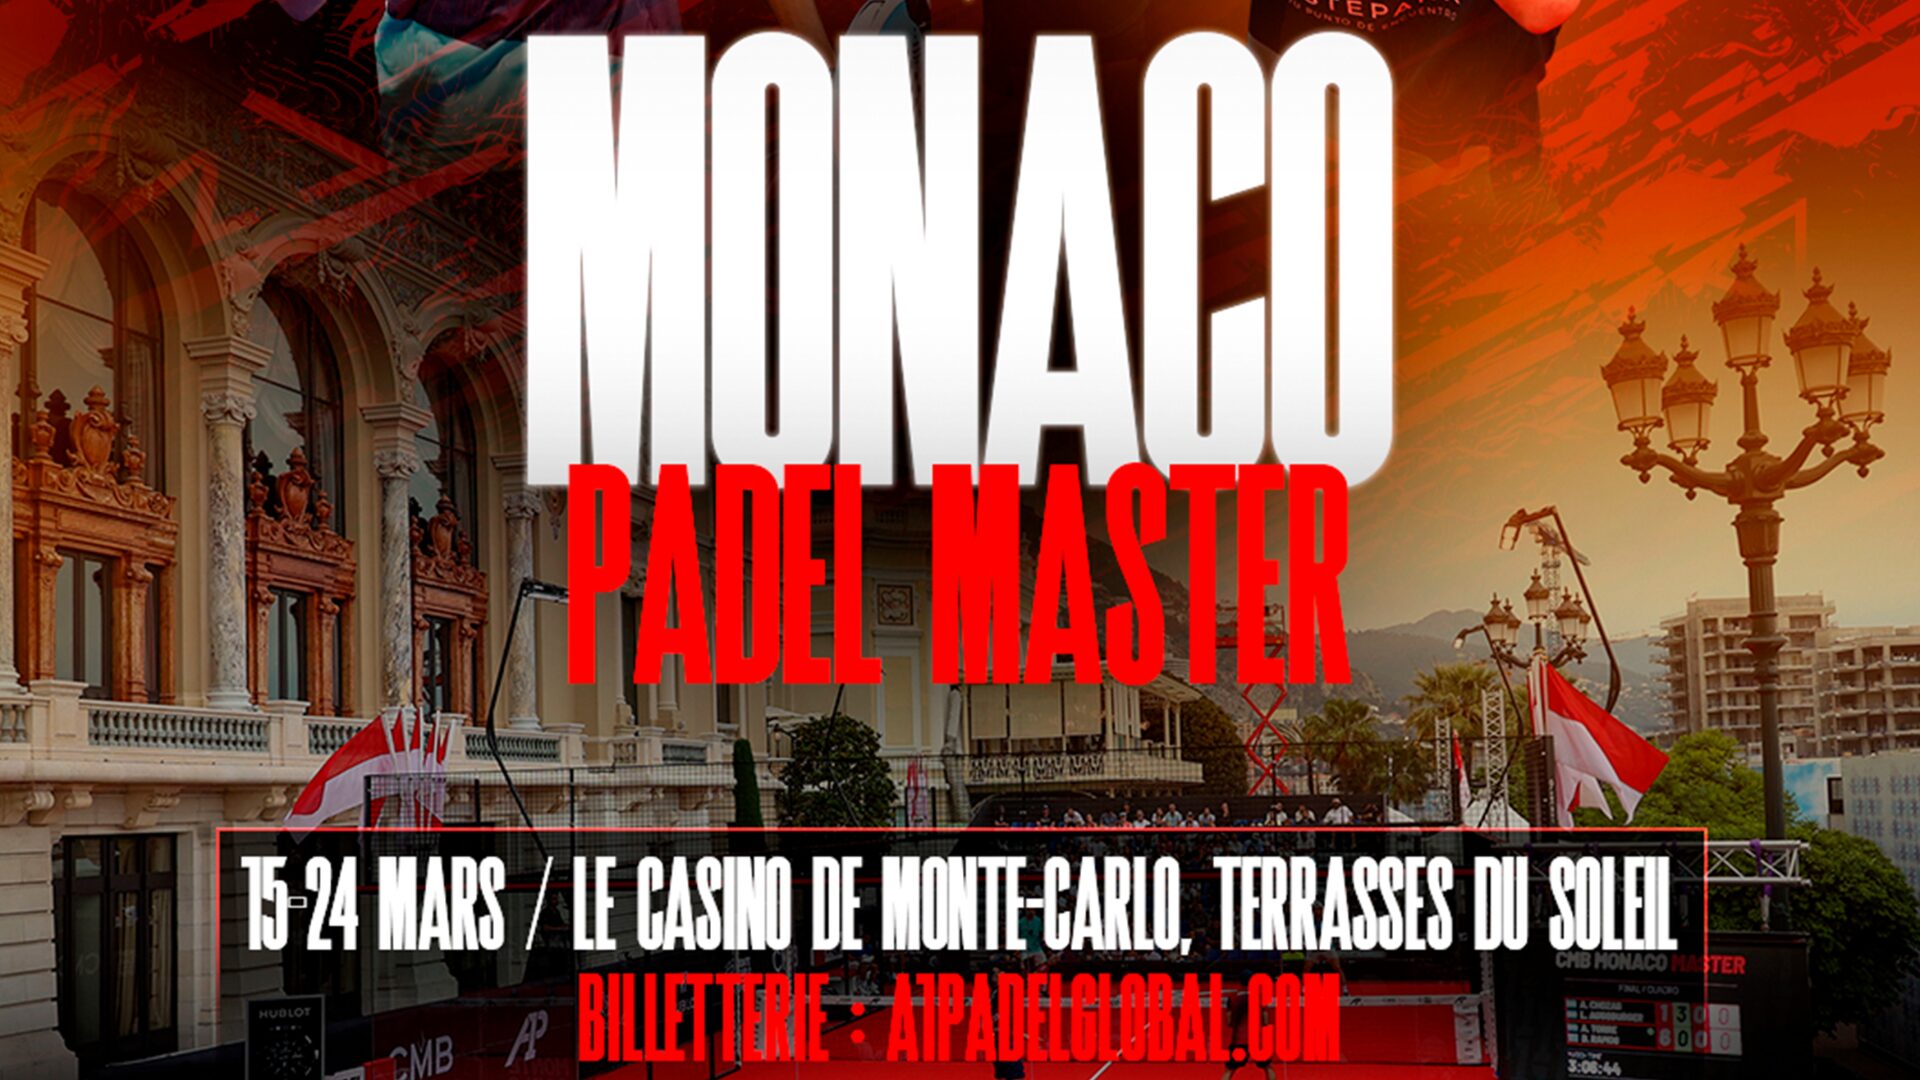 A1 Padel – Start van de Monaco Master aanstaande vrijdag!